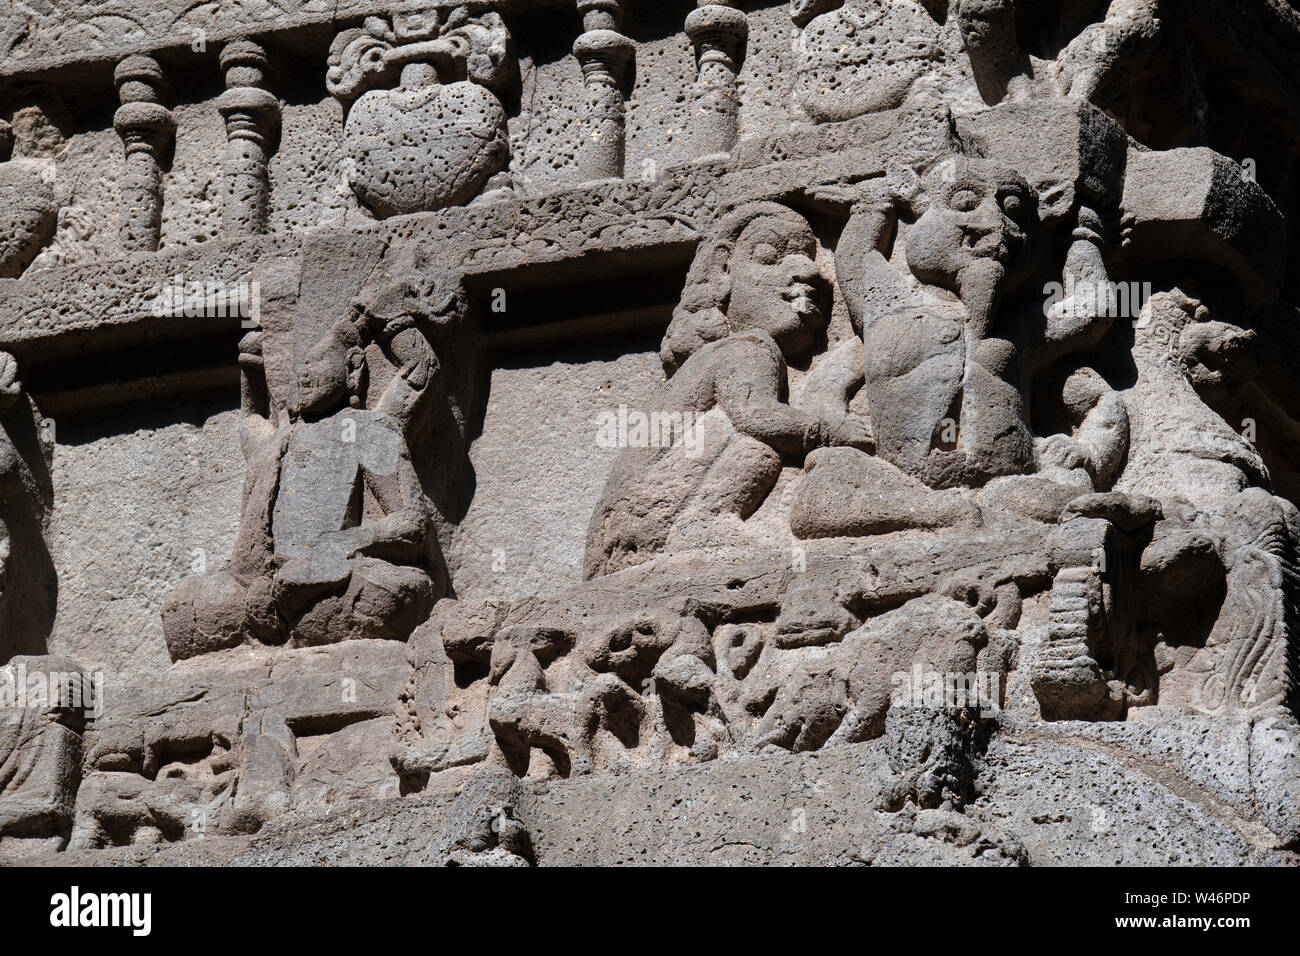 L'Inde, Maharashtra, Goa, les grottes d'Ellora. 16 grotte Kailasa Temple Kailasanatha, aka entièrement taillée d'une seule roche. Détail de sculptures très orné. Banque D'Images